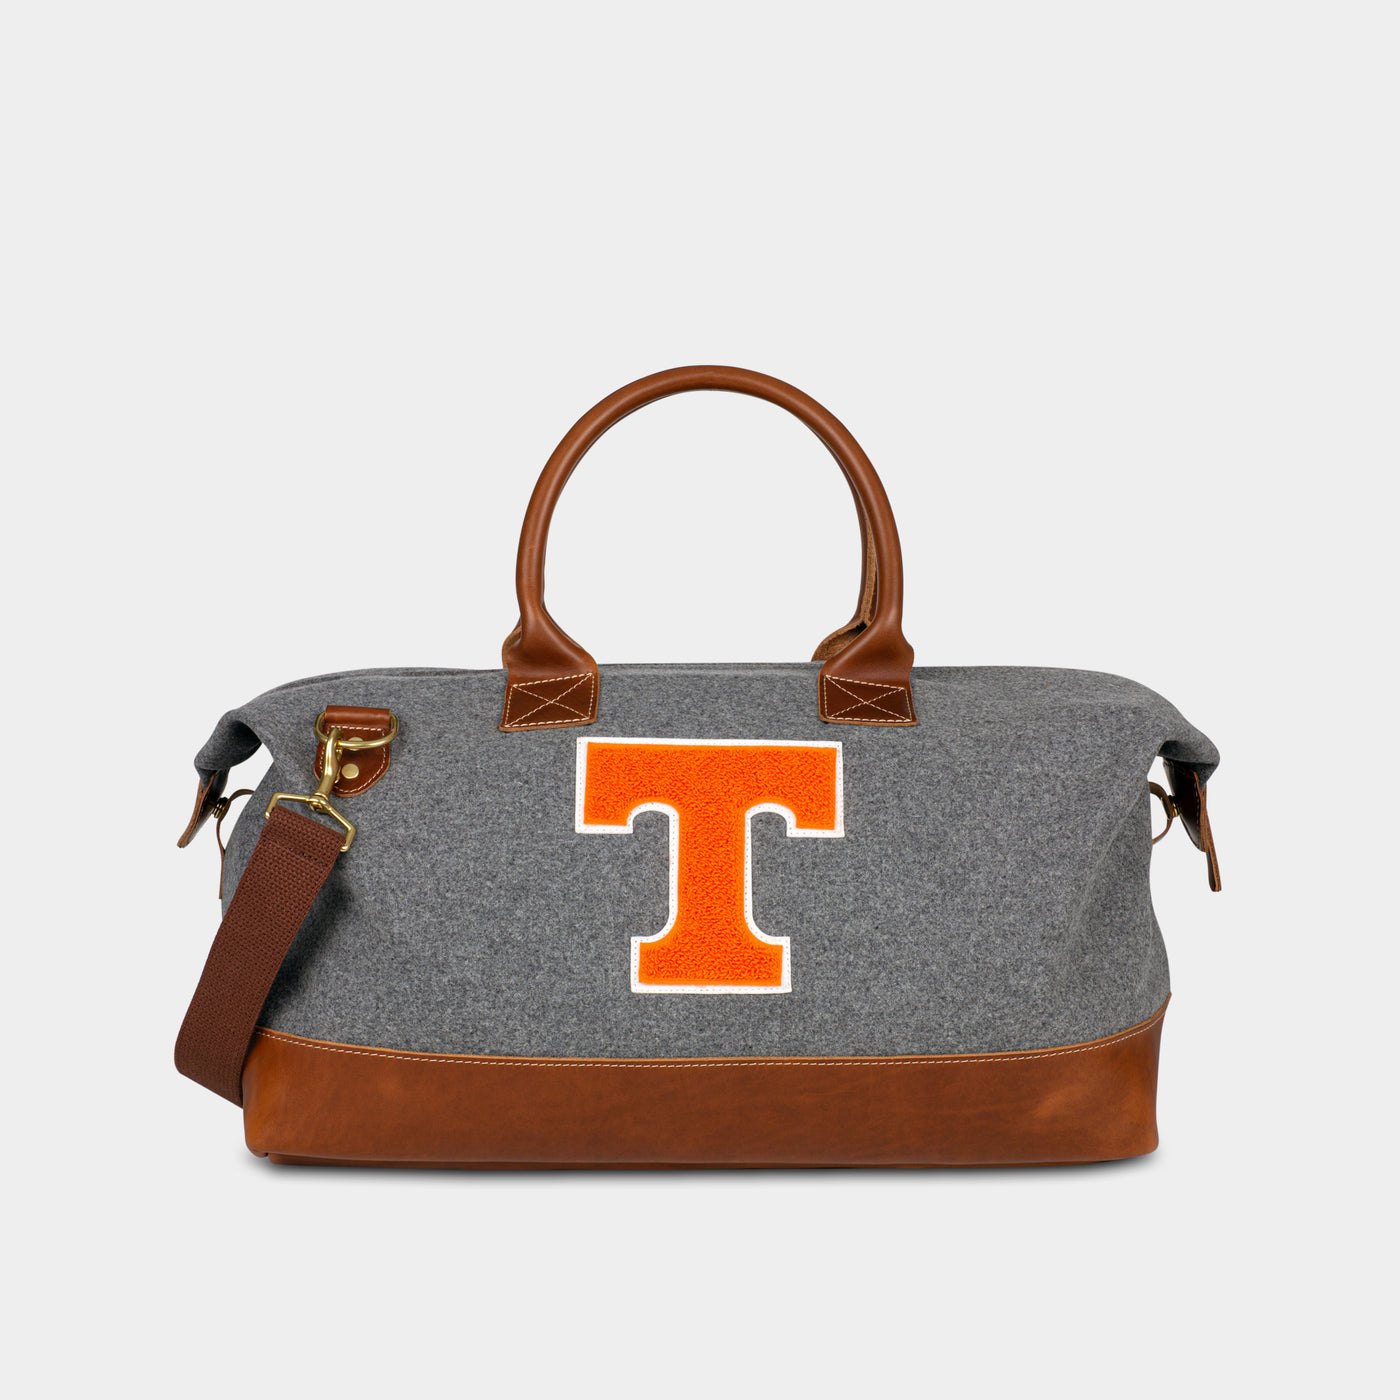 Tennessee Volunteers "T" Weekender Duffle Bag